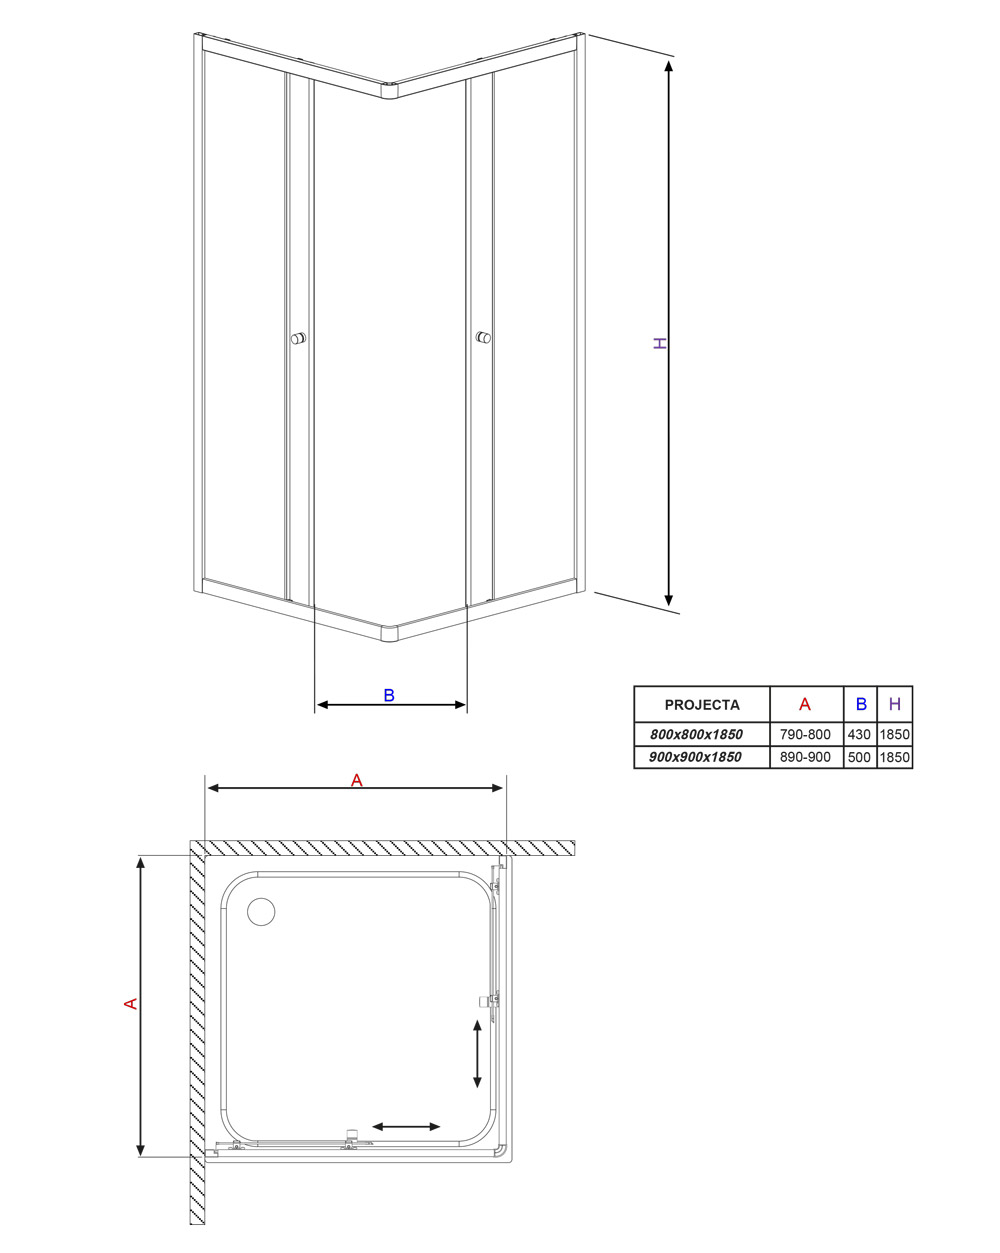 Projecta C szögletes zuhanykabin műszaki rajz